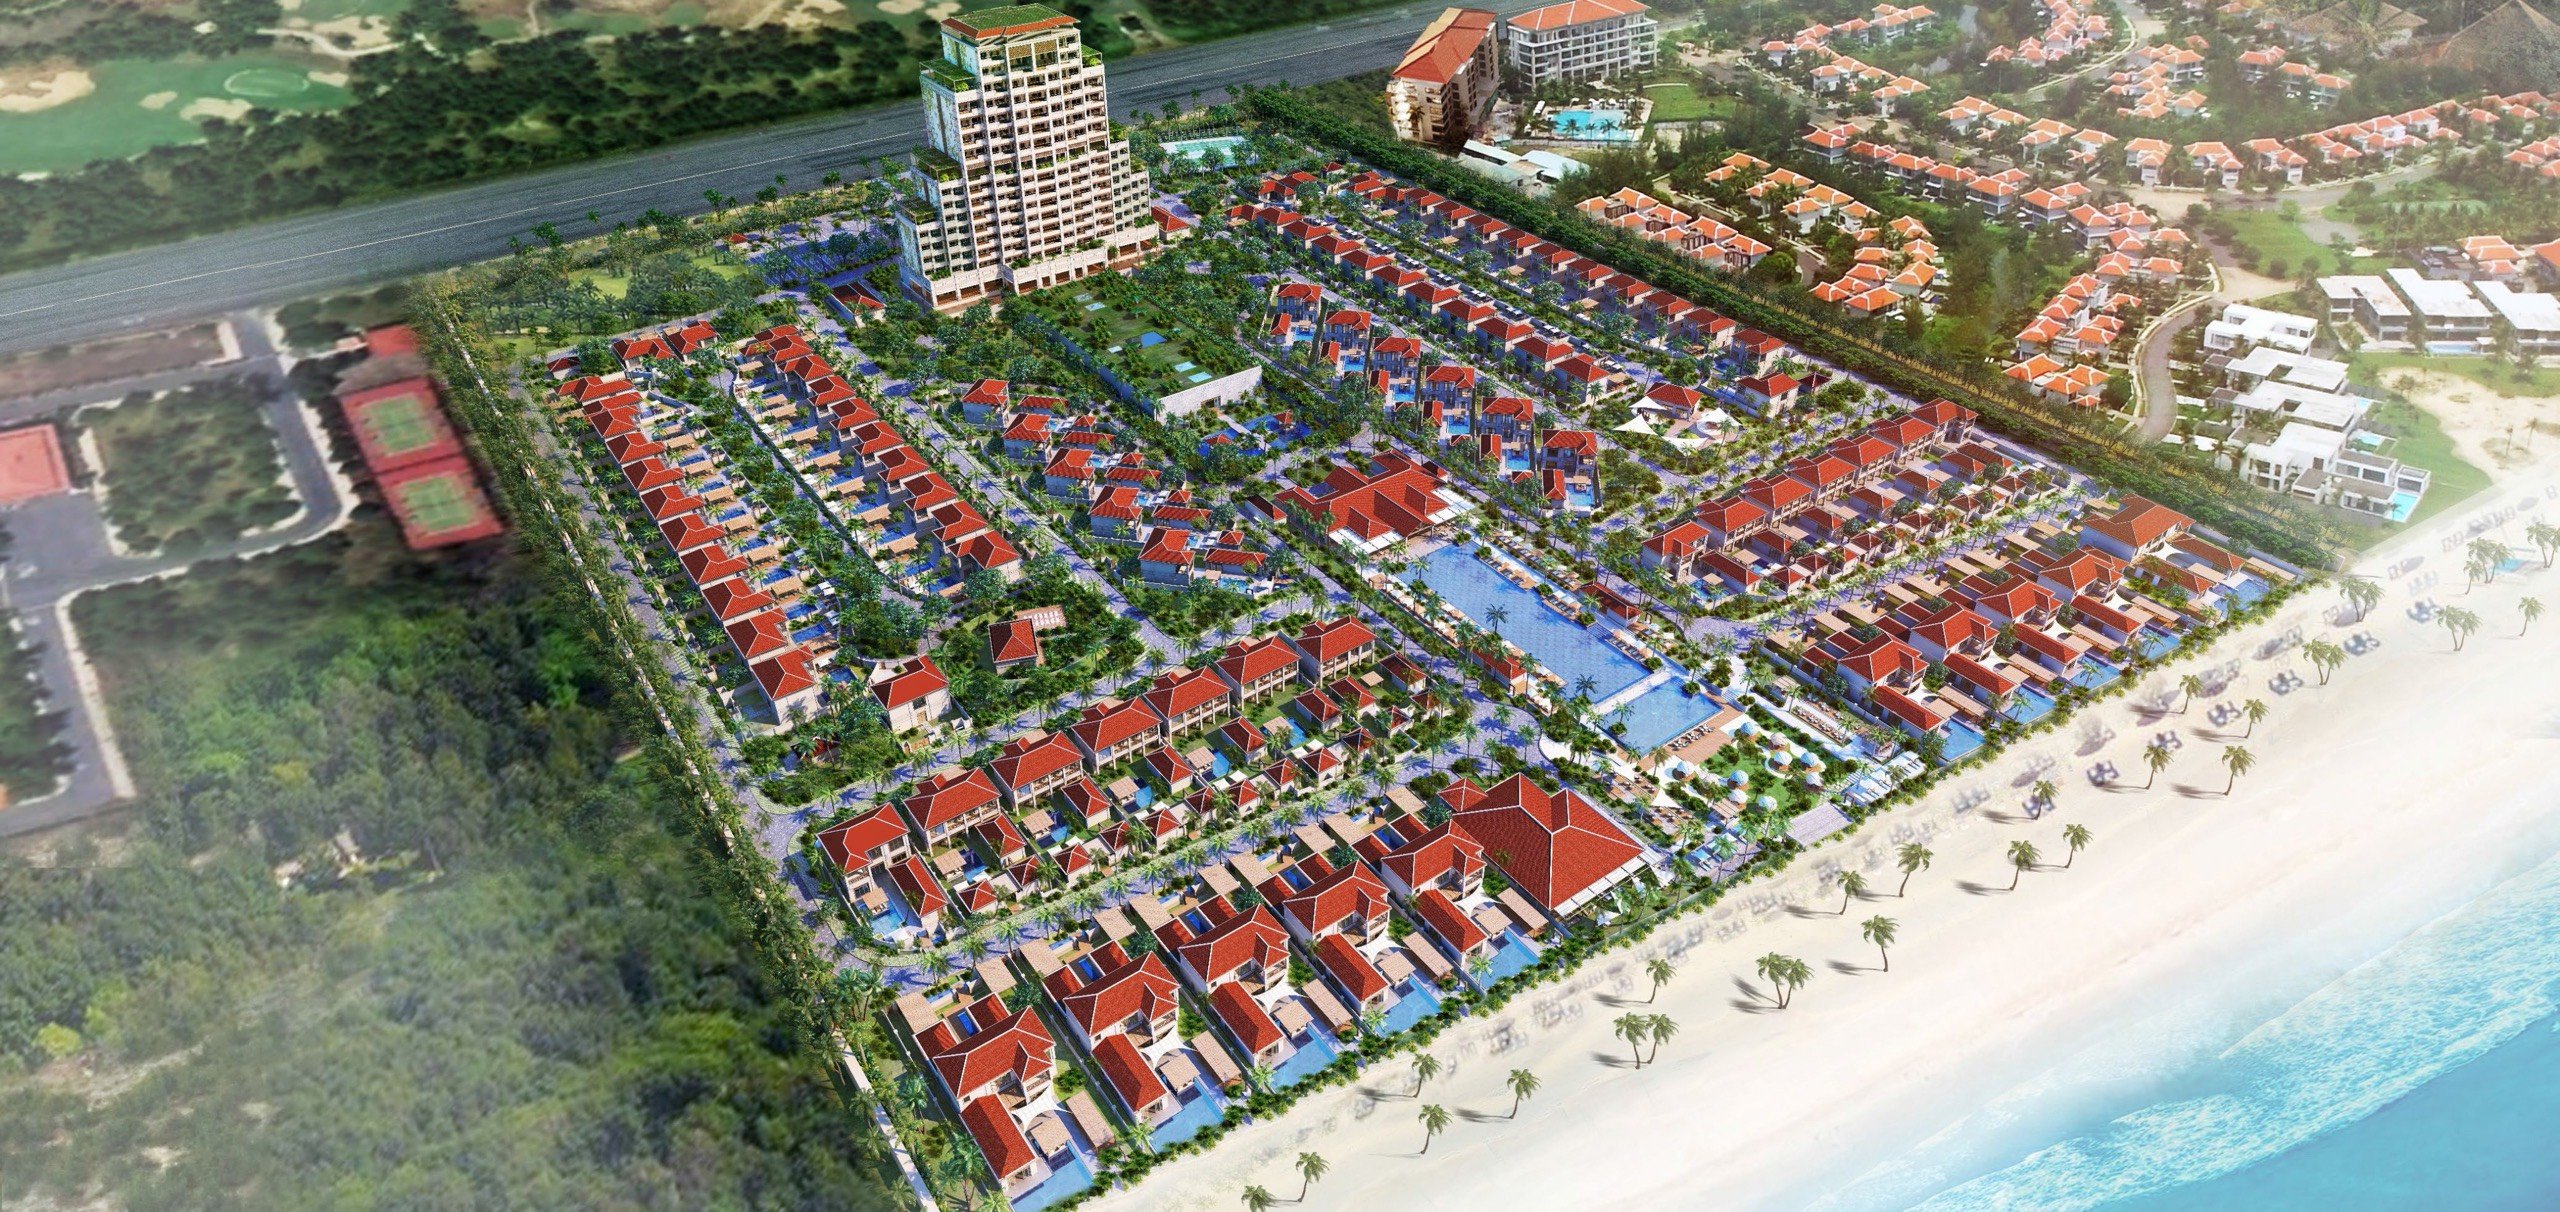 Fusion Villa Đà Nẵng Biệt thự cao cấp, DT 454m2, 2 phòng ngủ. Sân Vườn, Hồ bơi riêng. Chỉ từ 31 tỷ - Liên hệ Hương 0903407925 4